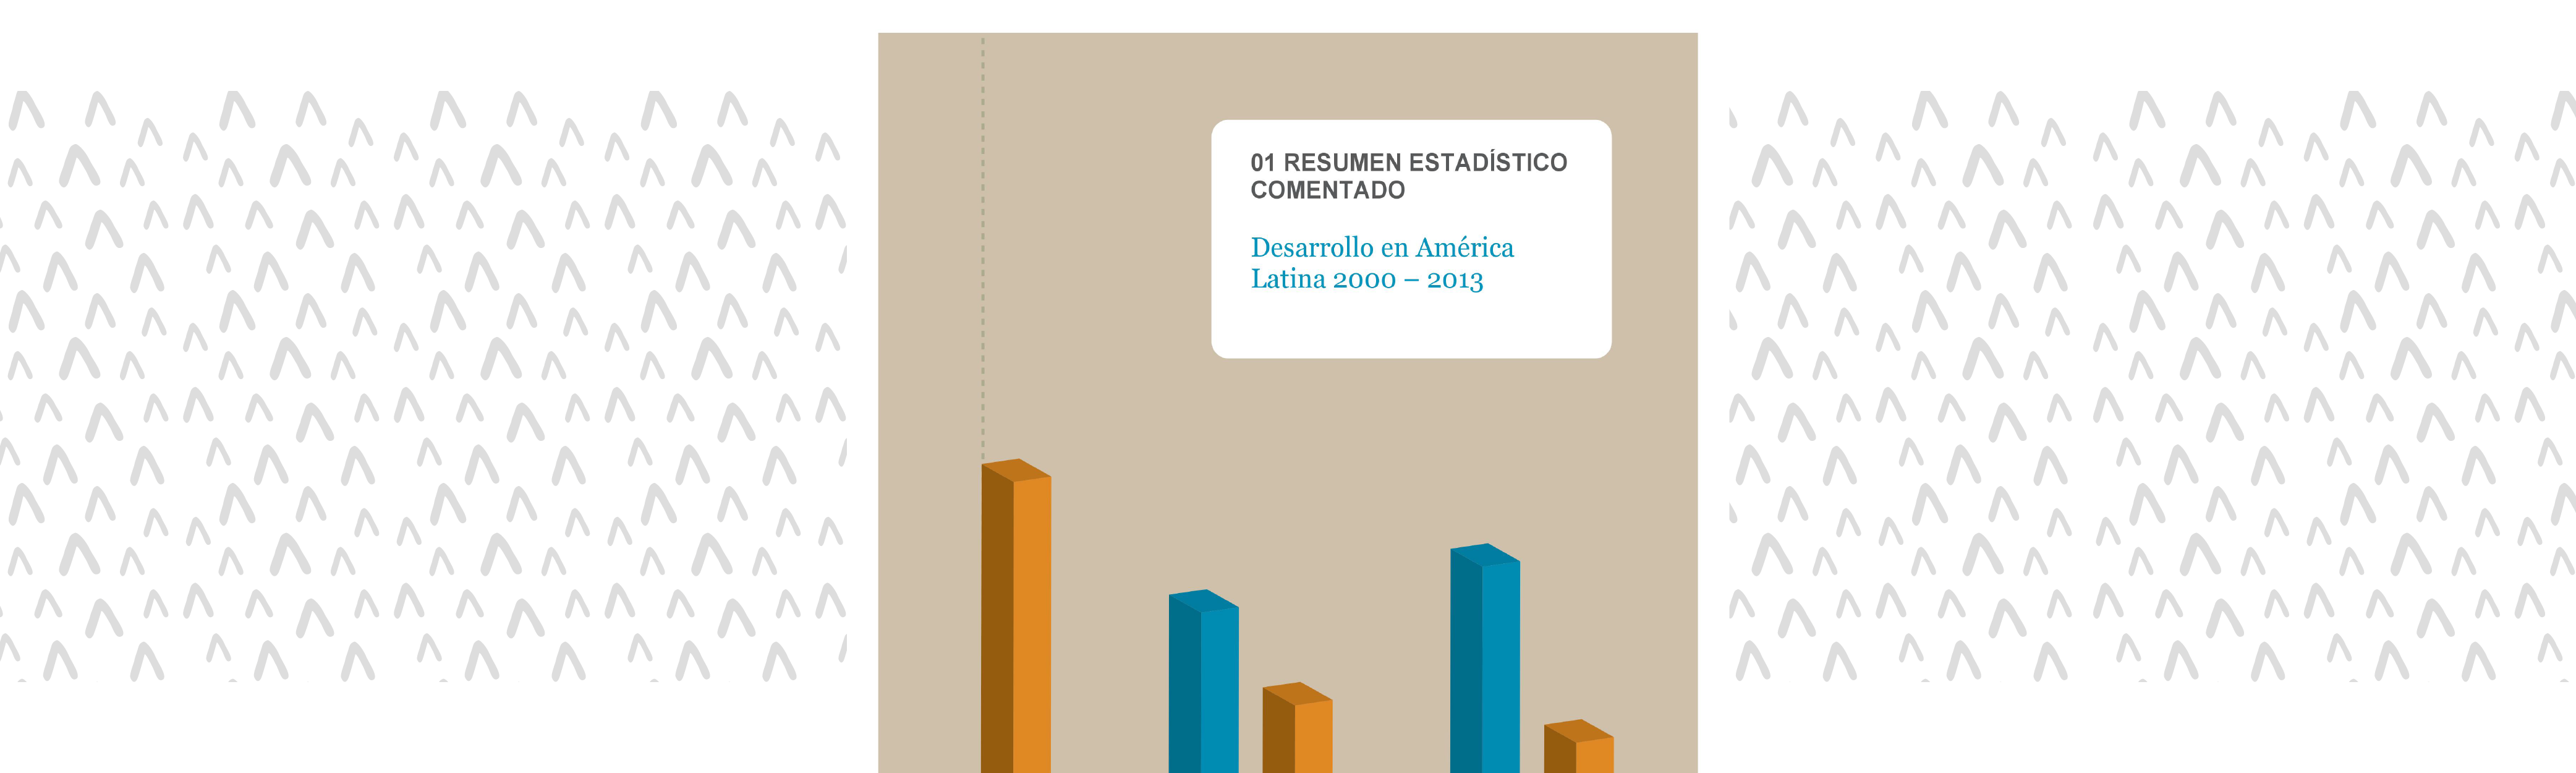 Desenvolvimento na América Latina 2000-2013. Resumen estatístico comentado